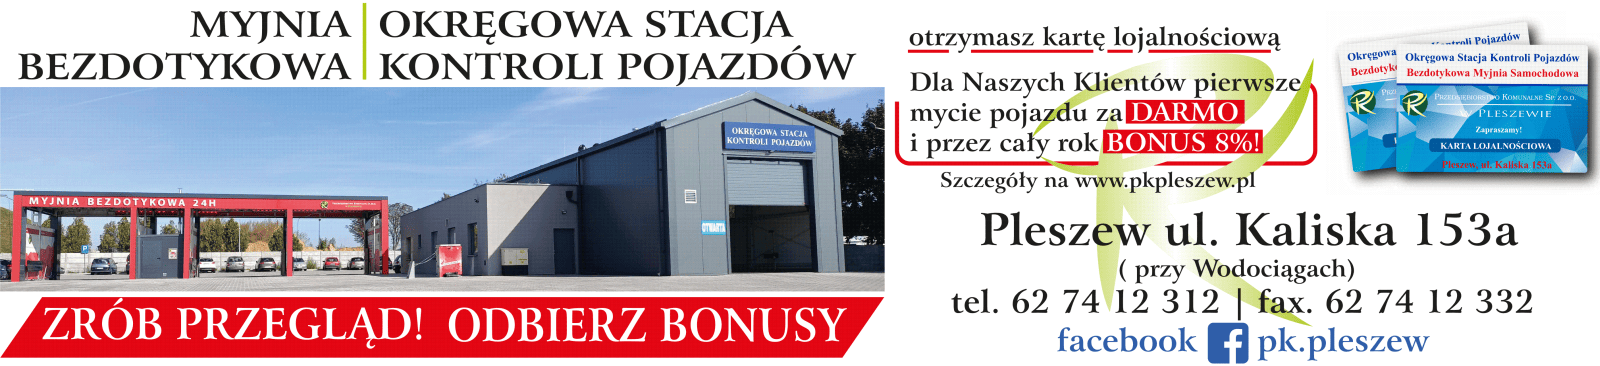 Irena Kuczyńska blog - baner - myjnia bezdotykowa i okręgowa stacja kontroli pojazdów